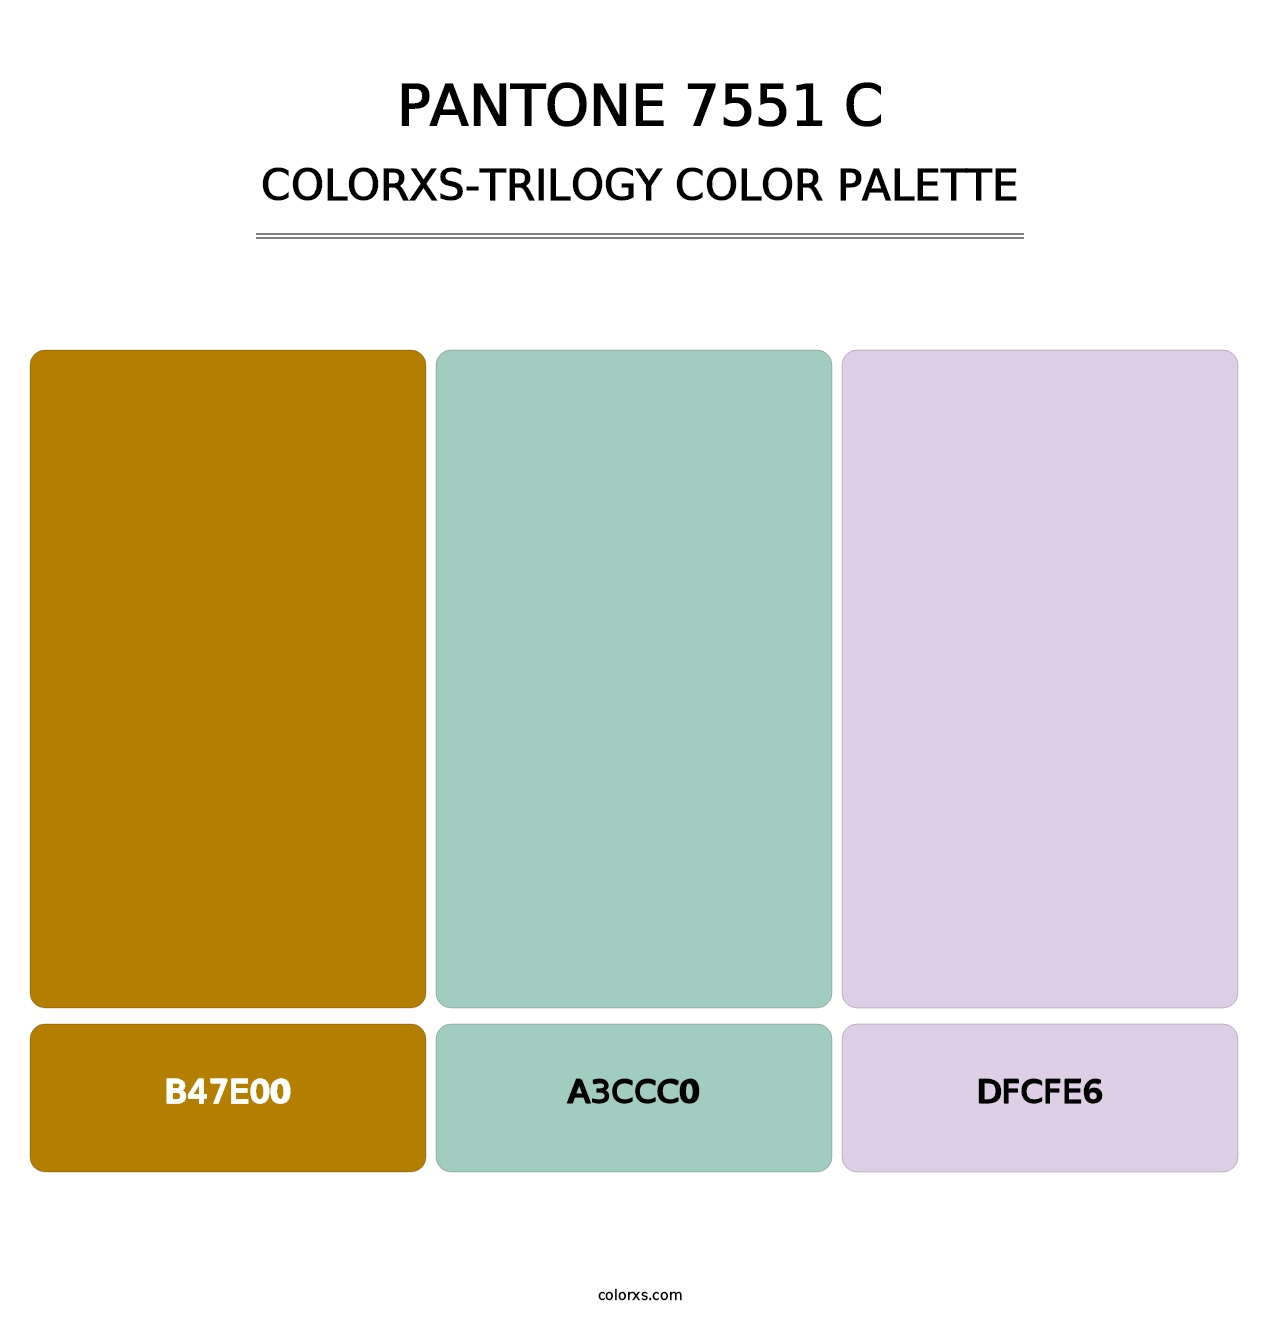 PANTONE 7551 C - Colorxs Trilogy Palette